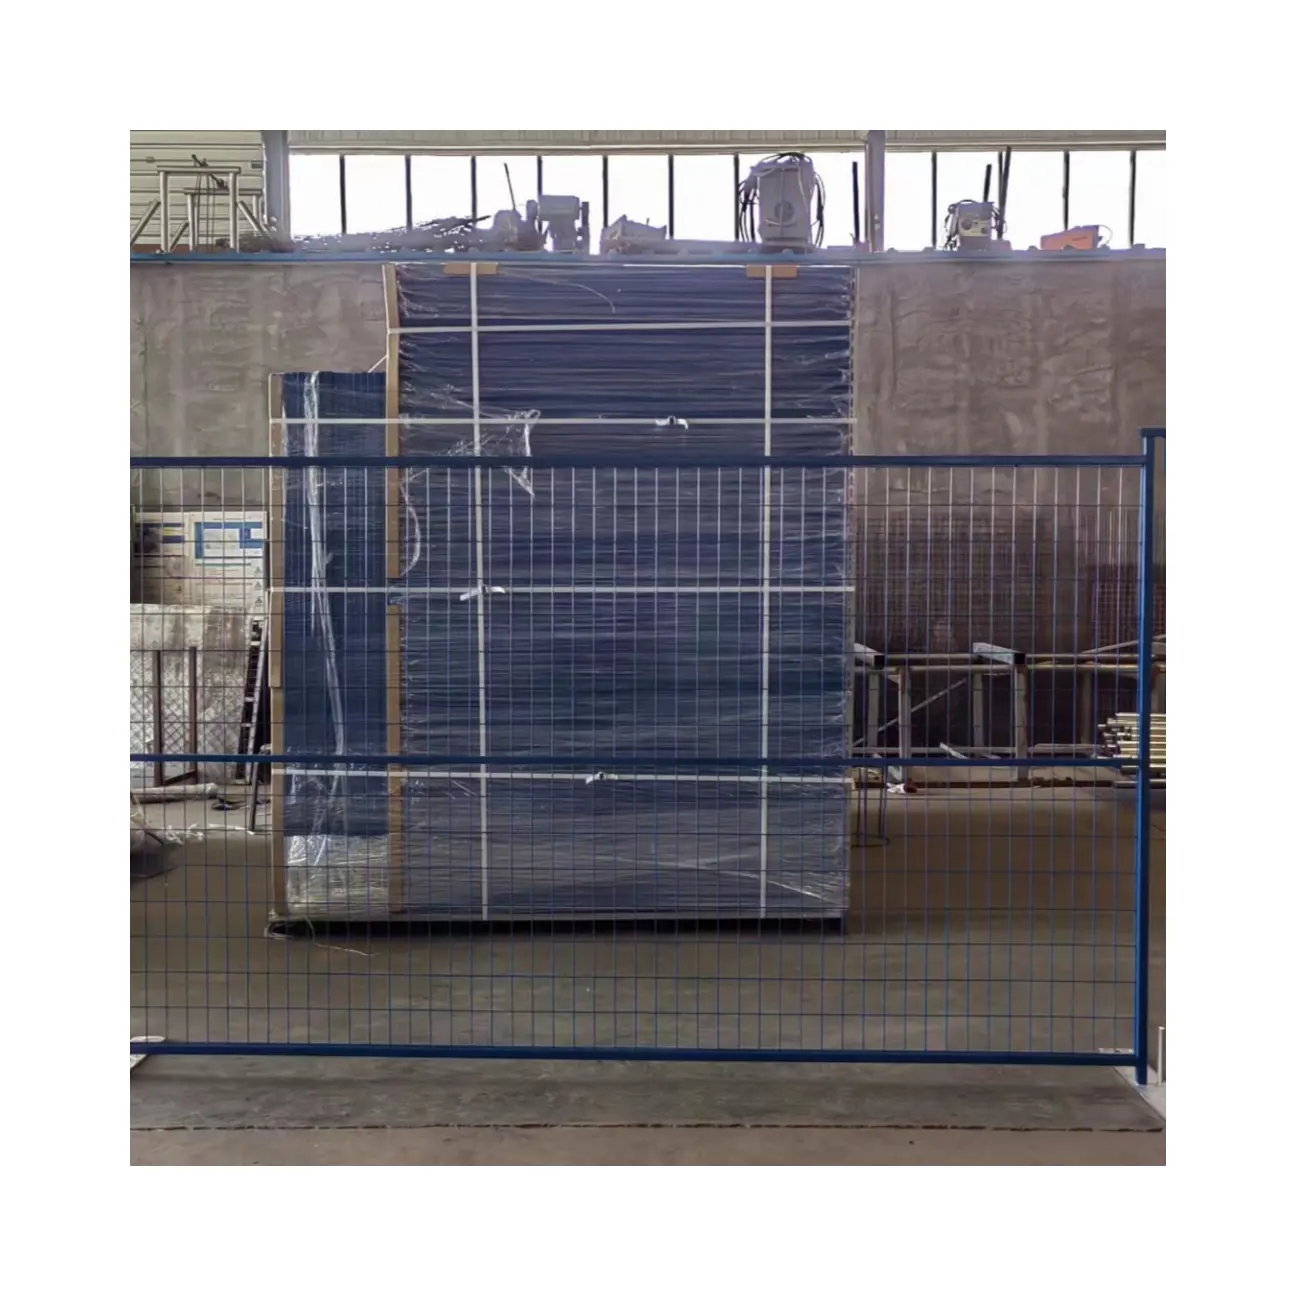 Di alta qualità salda Canada recinzione temporanea zincata e verniciata a polvere piccola recinzione rimovibile recinzione metallica temporanea per cani